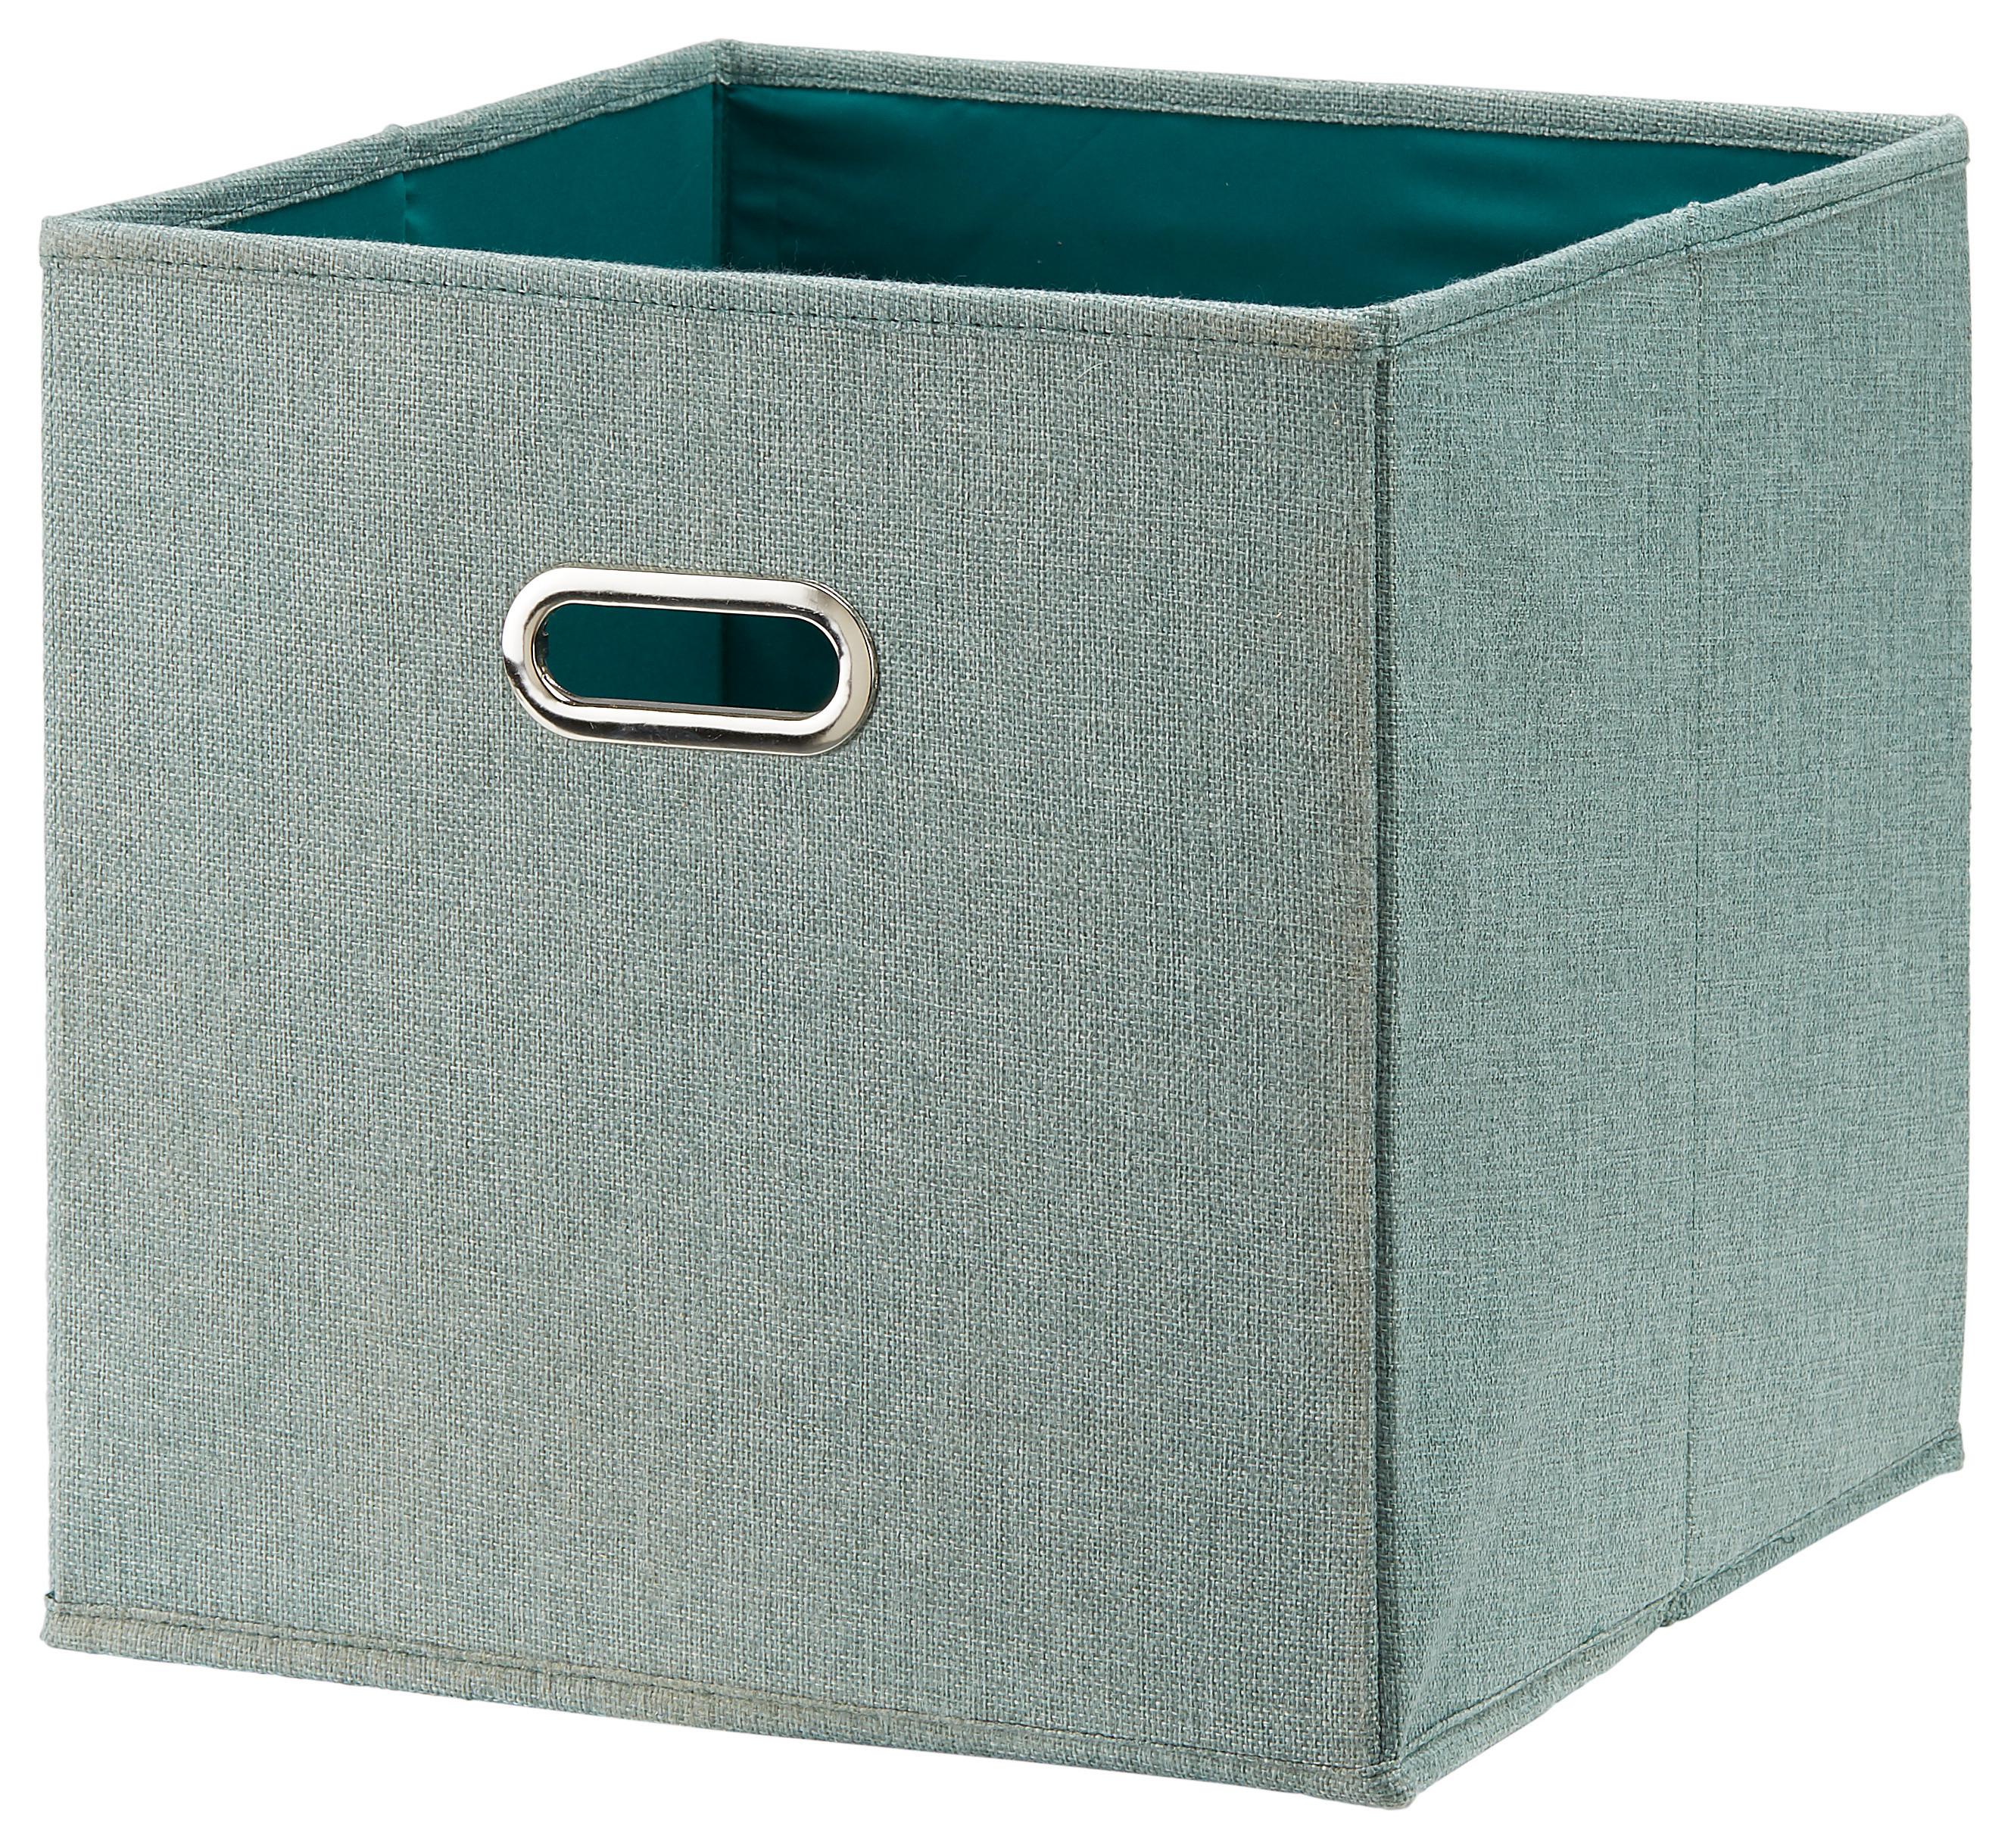 Skladací Box Bobby Ca.34l -Ext- -Akt- -Top- - zelená, Moderný, kartón/textil (33/32/33cm) - Premium Living